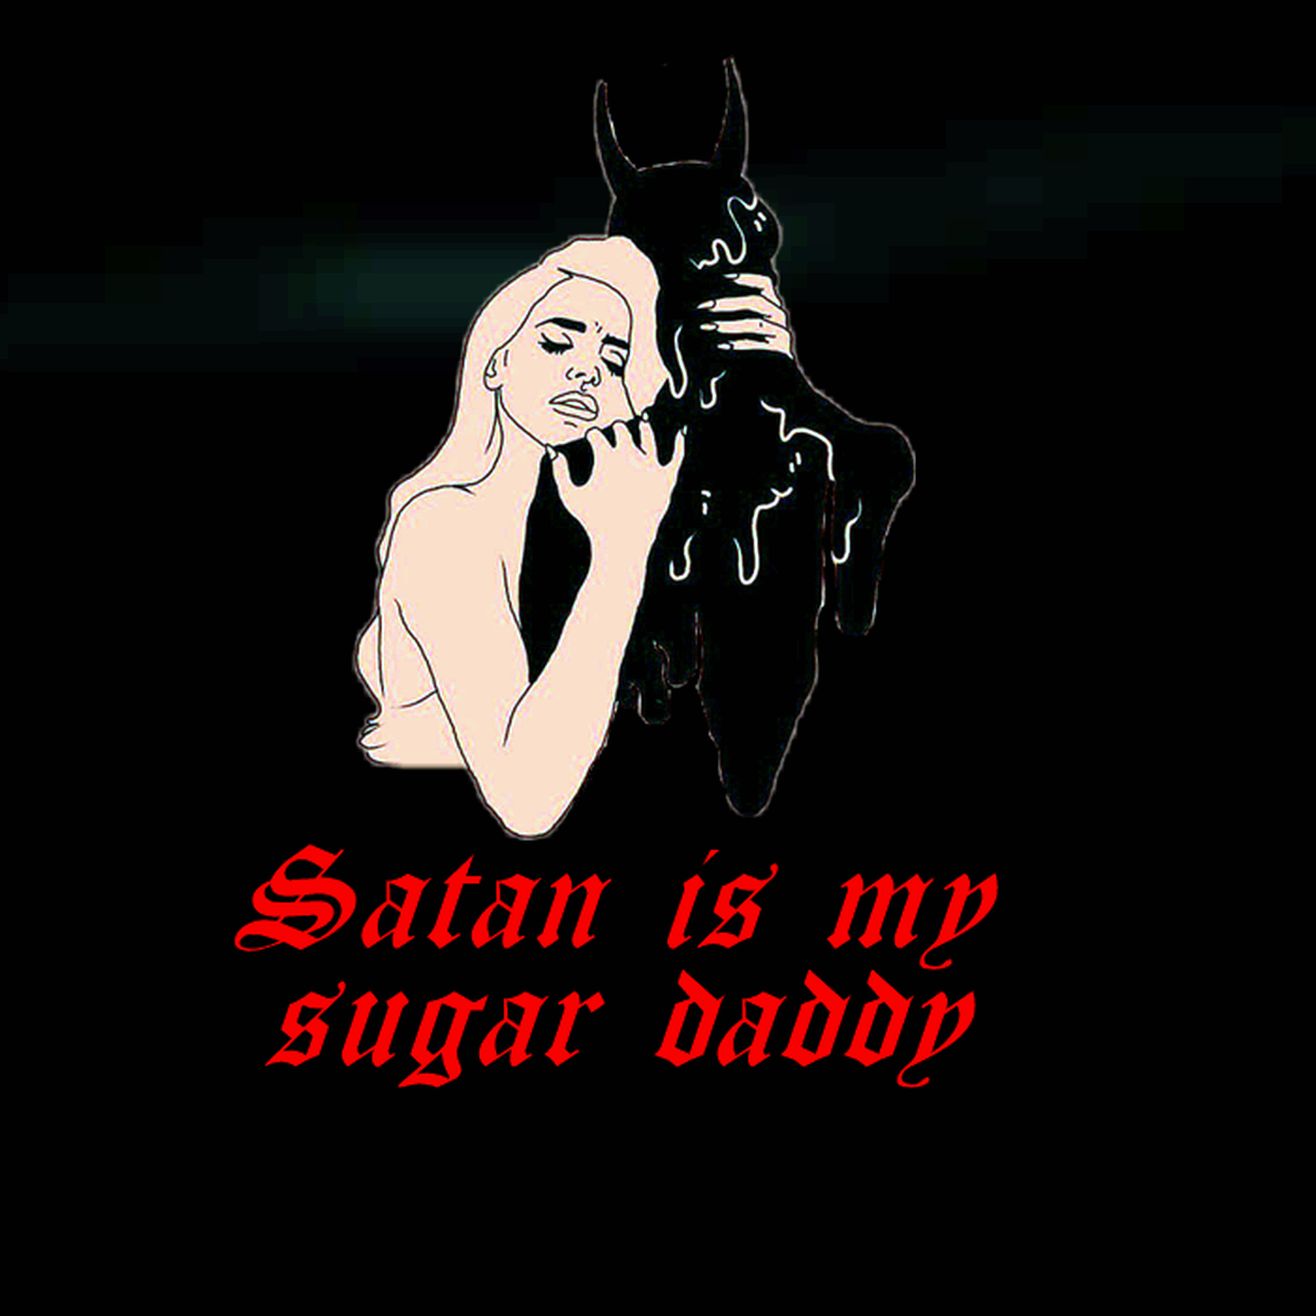 Sugar daddy - Witch, Goth, Gothic, BTGGF, Demoness, Succuba, Мракья, Mrakia, Shedevil, Deviless, 陰, 阴, い​ん, 魔女, Teufelin, Дьяволица